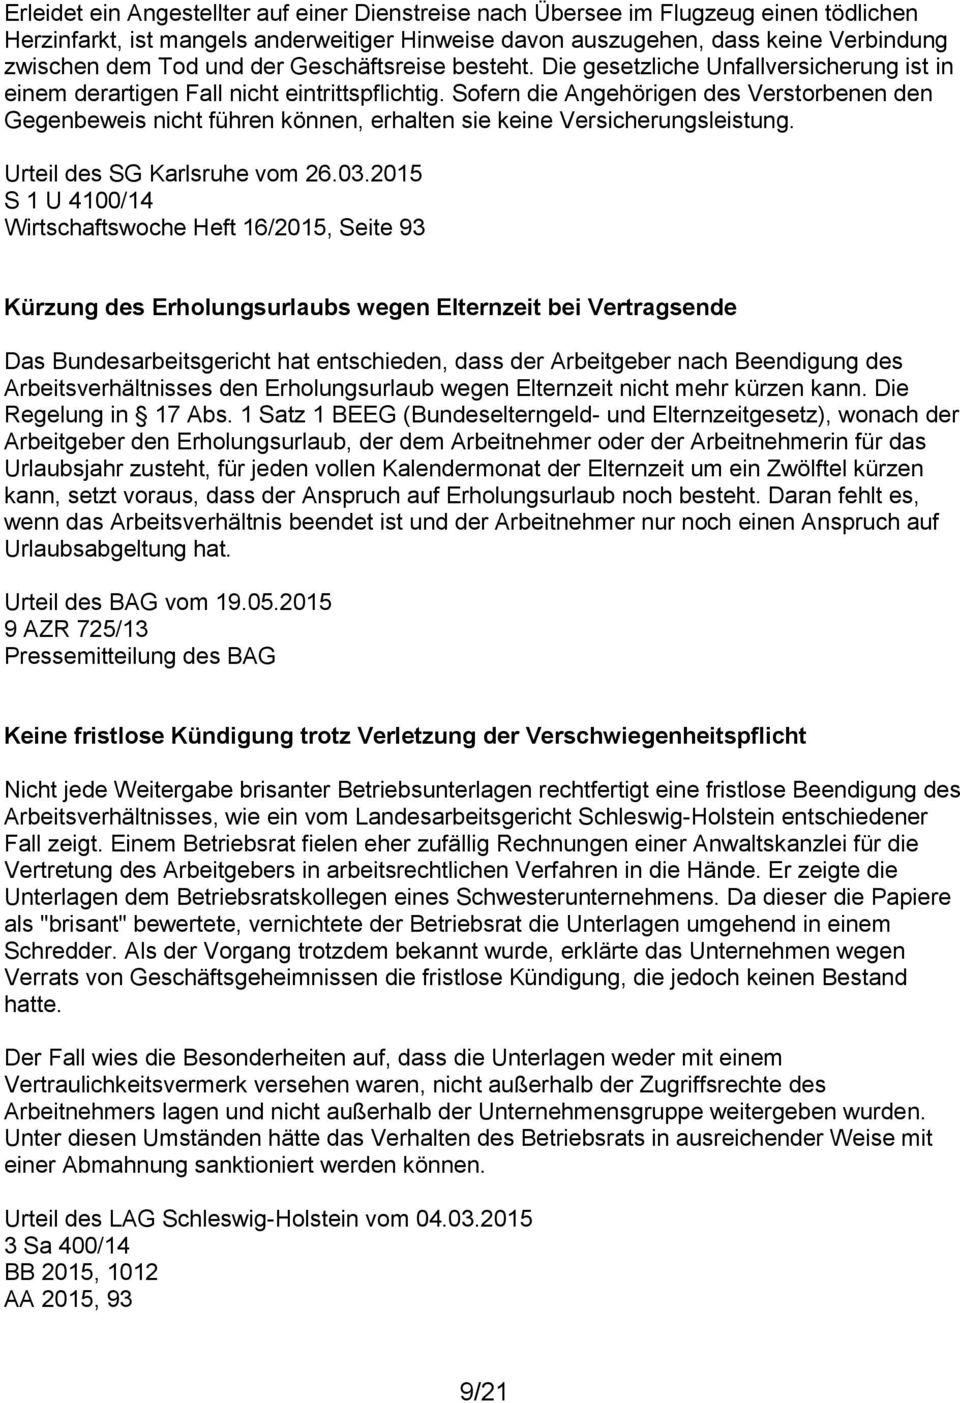 Sofern die Angehörigen des Verstorbenen den Gegenbeweis nicht führen können, erhalten sie keine Versicherungsleistung. Urteil des SG Karlsruhe vom 26.03.